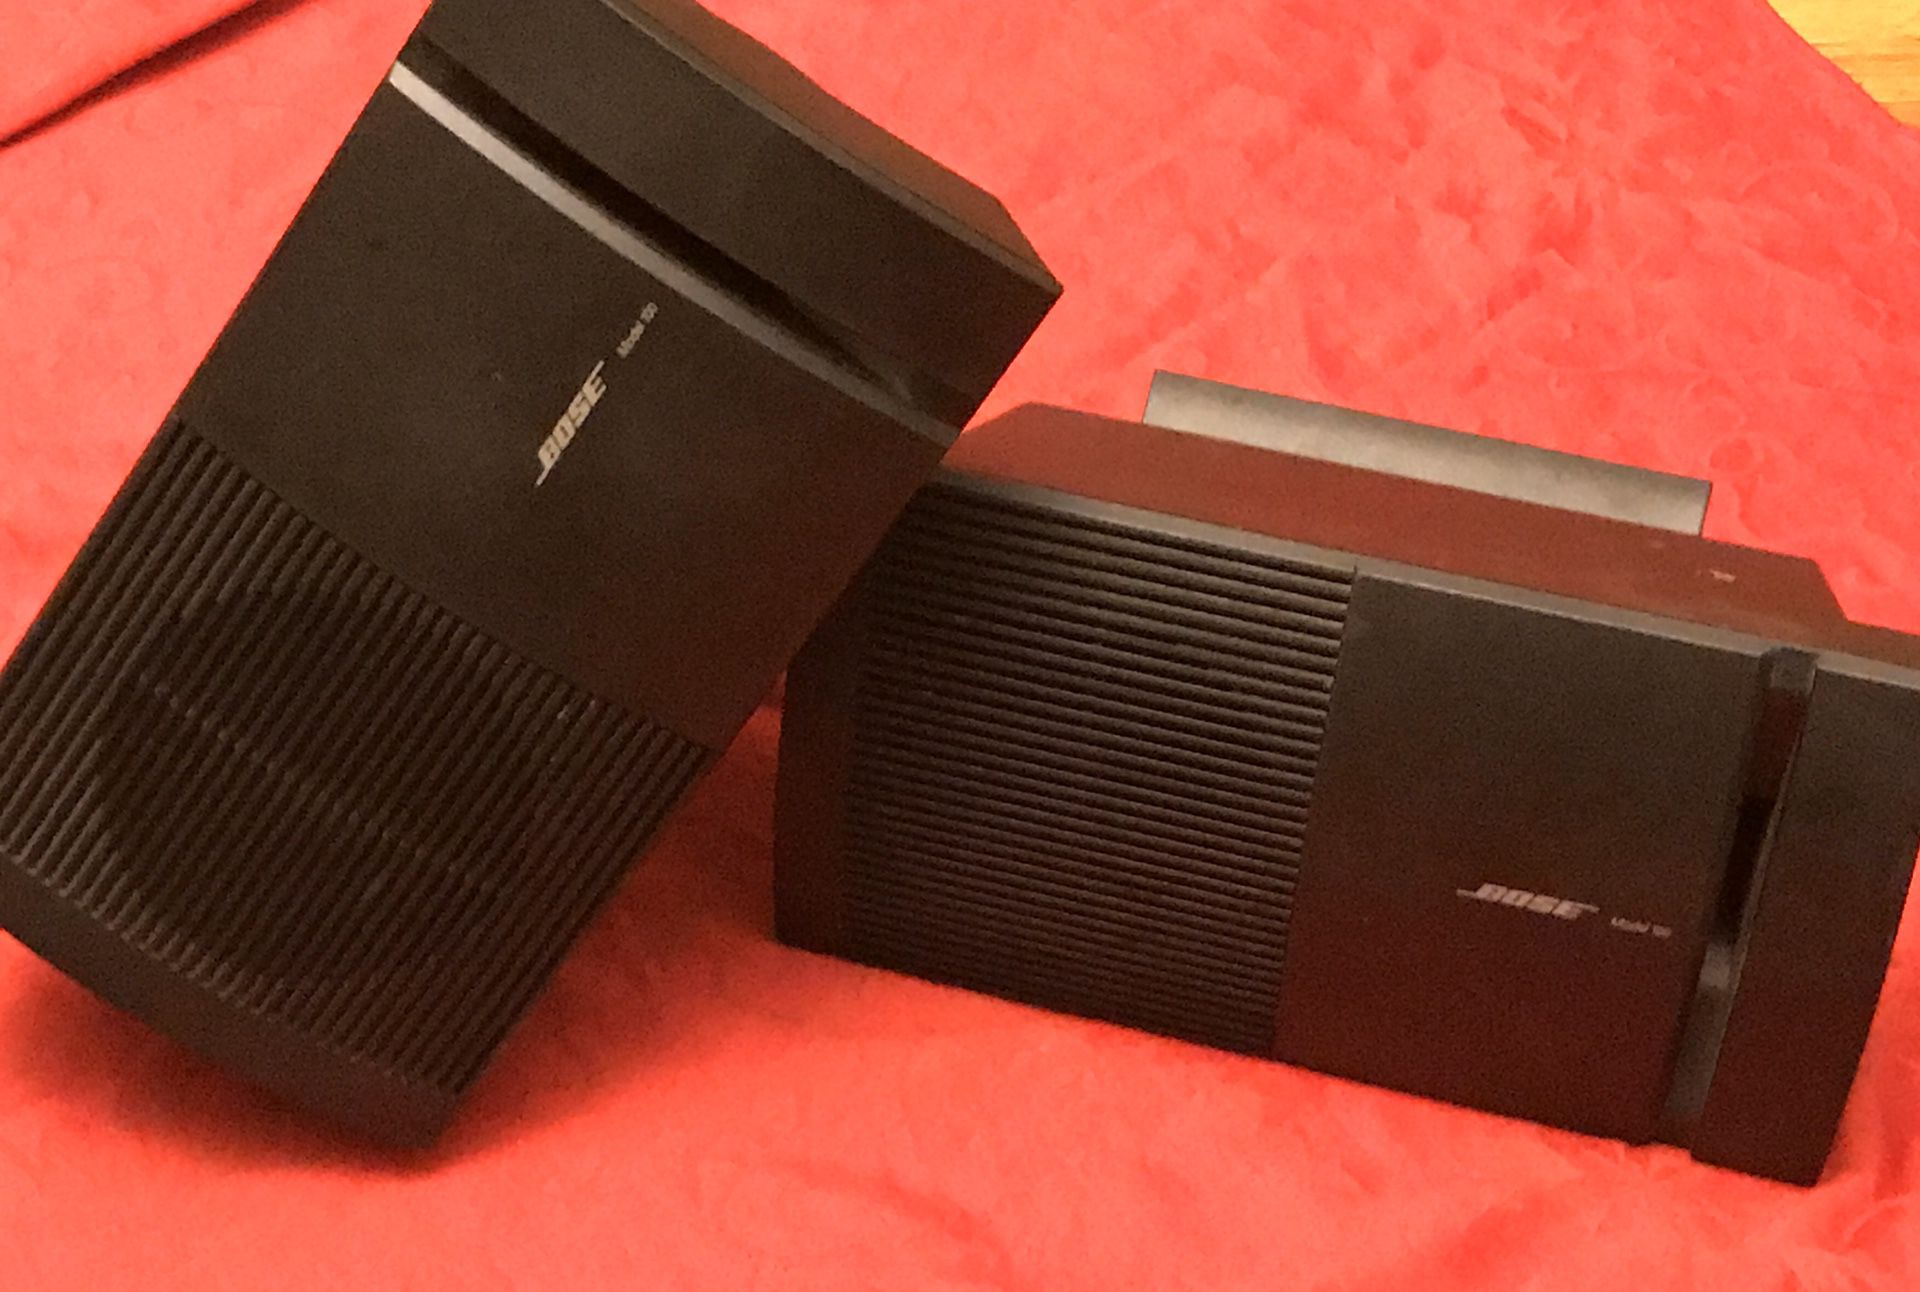 Pair Of Bose Car Speakers